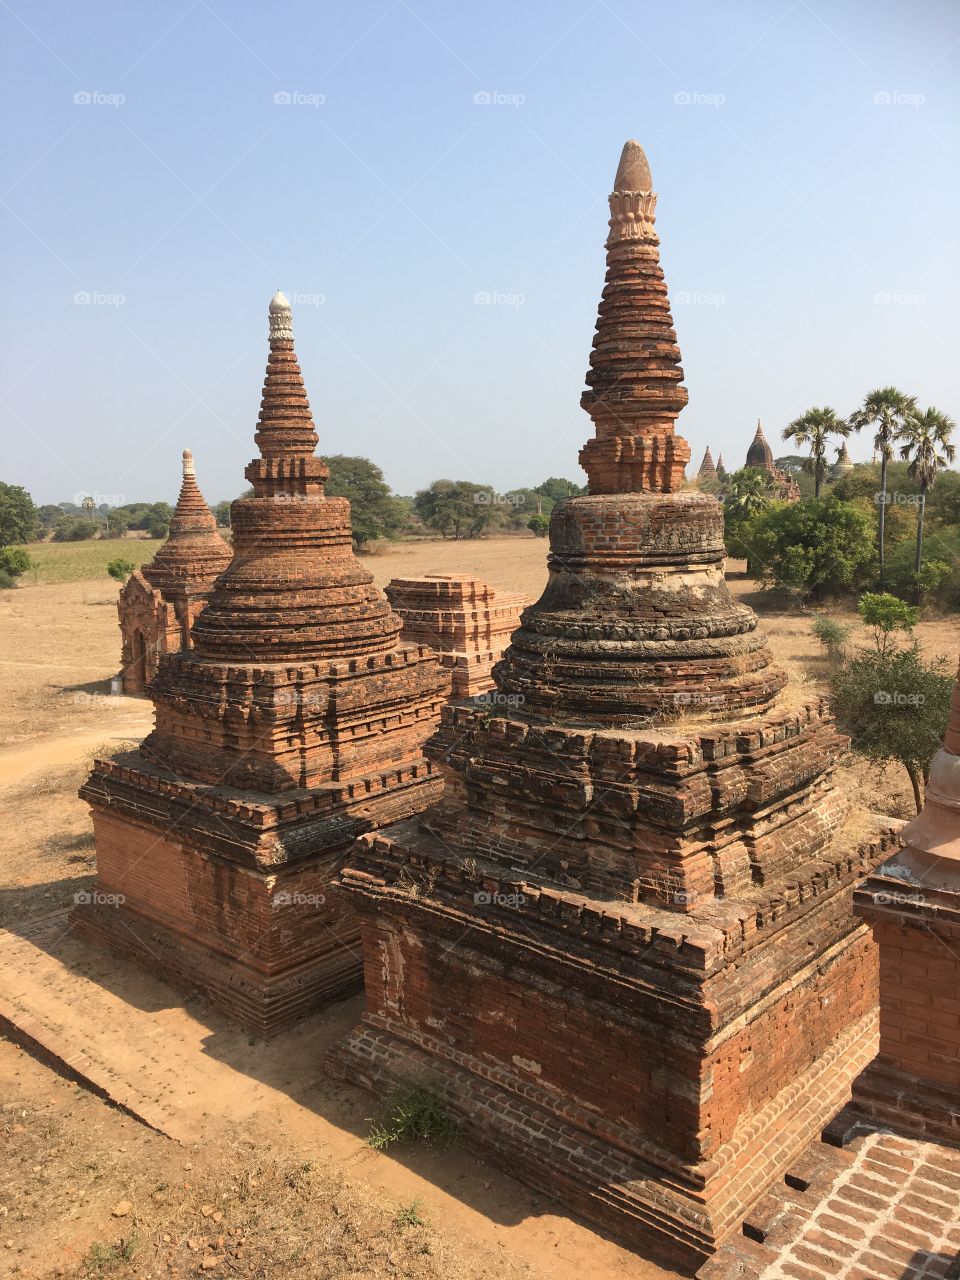 Temple, Architecture, Travel, Pagoda, No Person